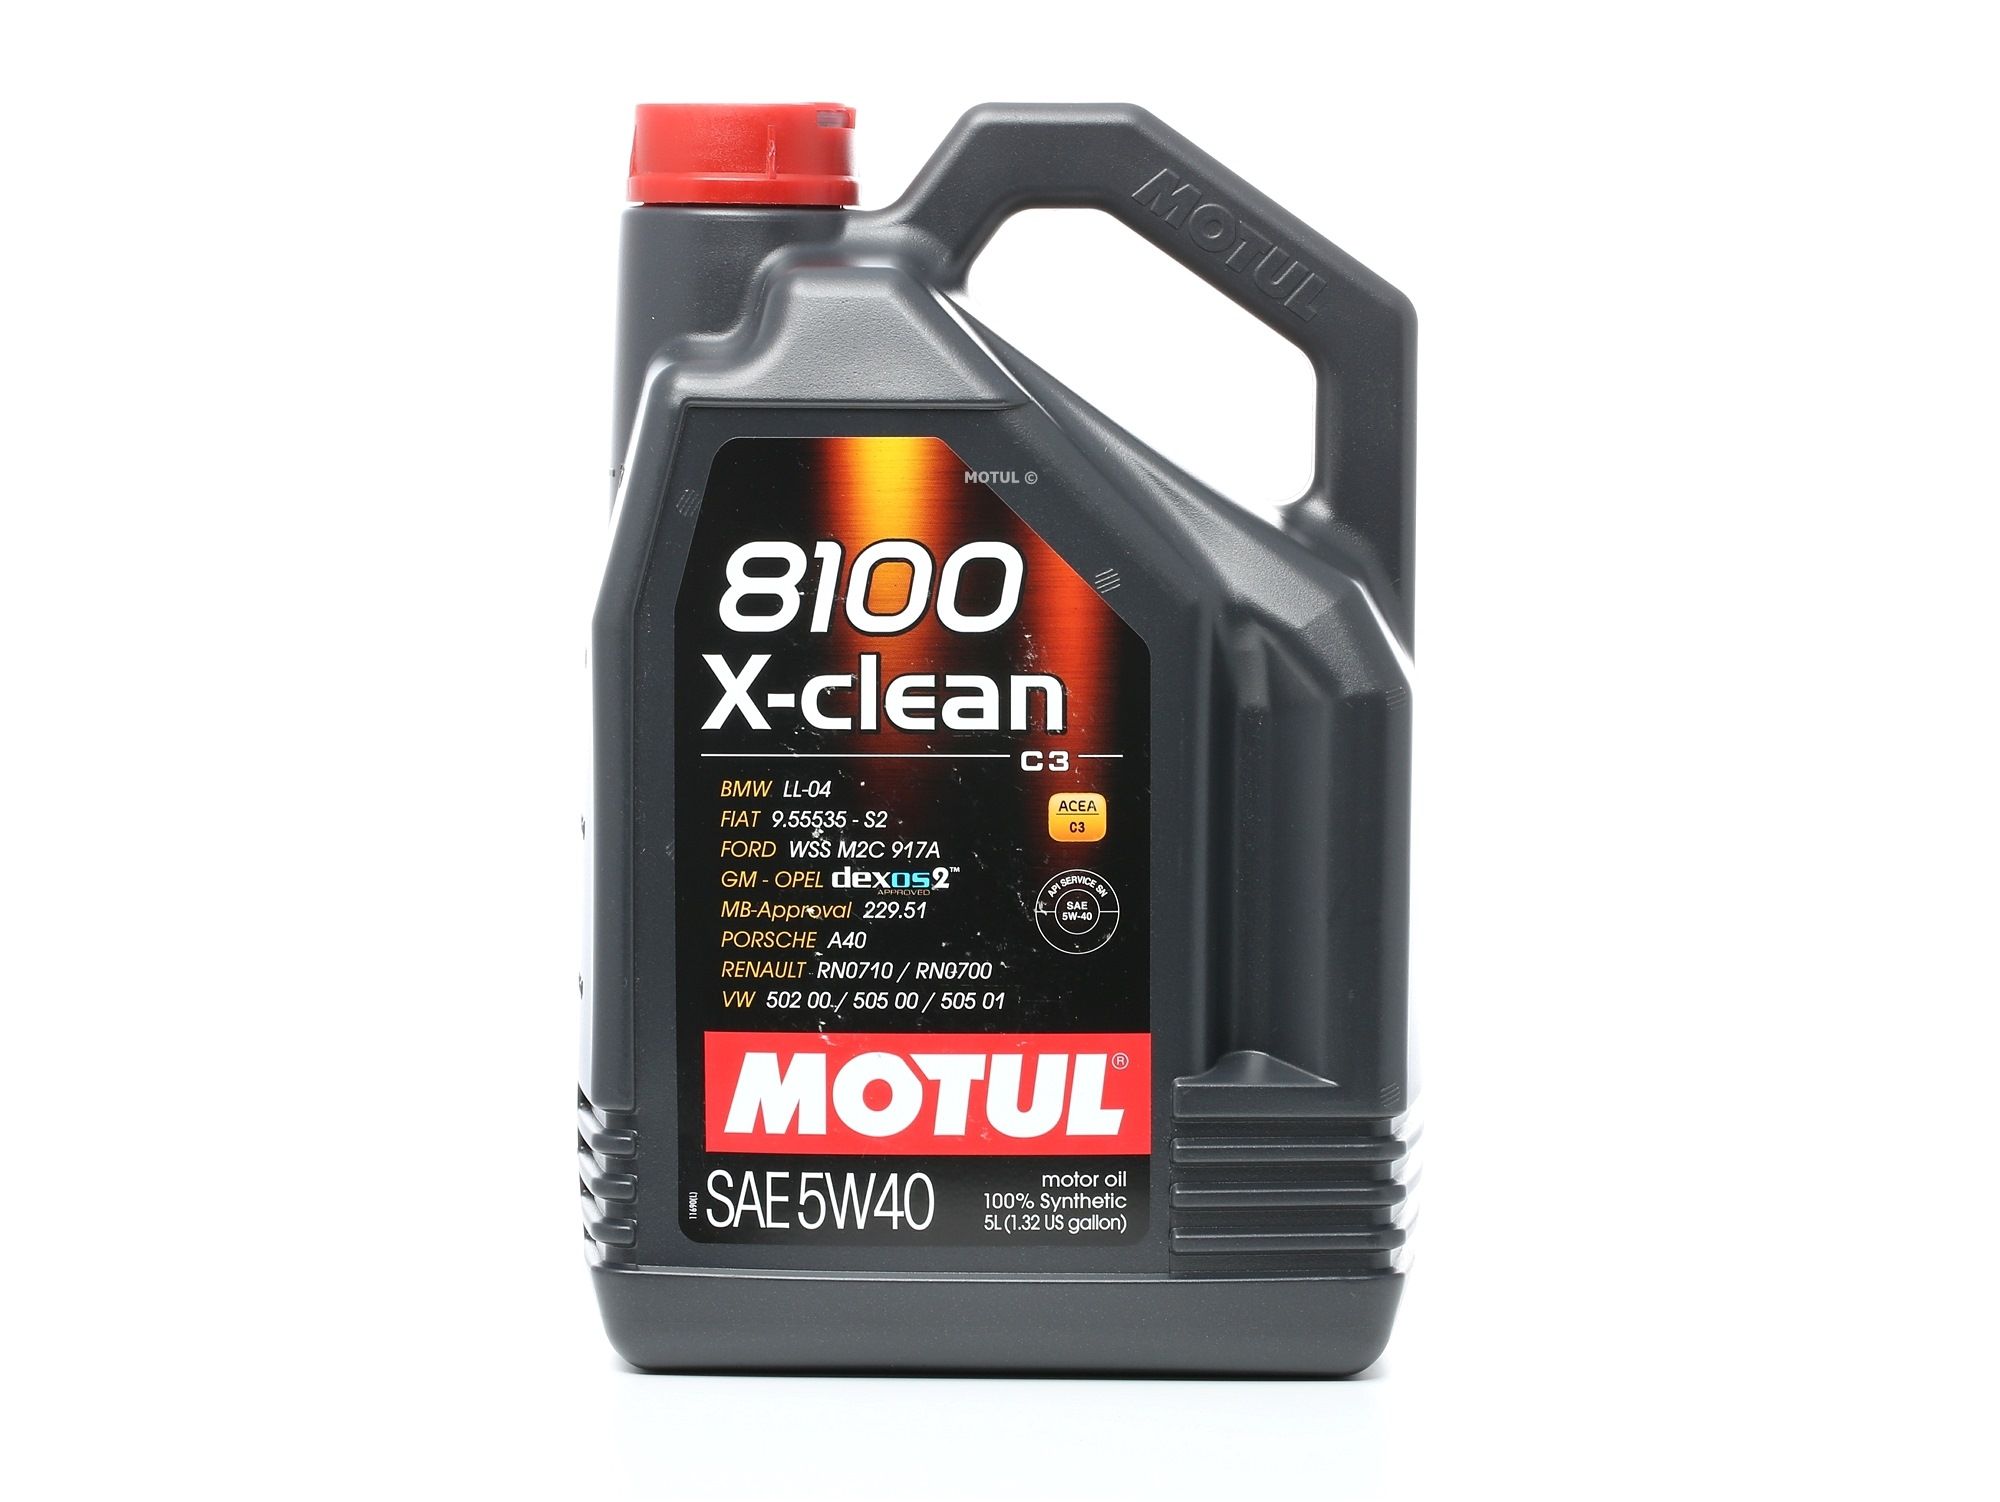 Comprare SUZUKI MOTUL X-CLEAN 5W-40, 5l, Olio sintetico Olio motore 102051 poco costoso